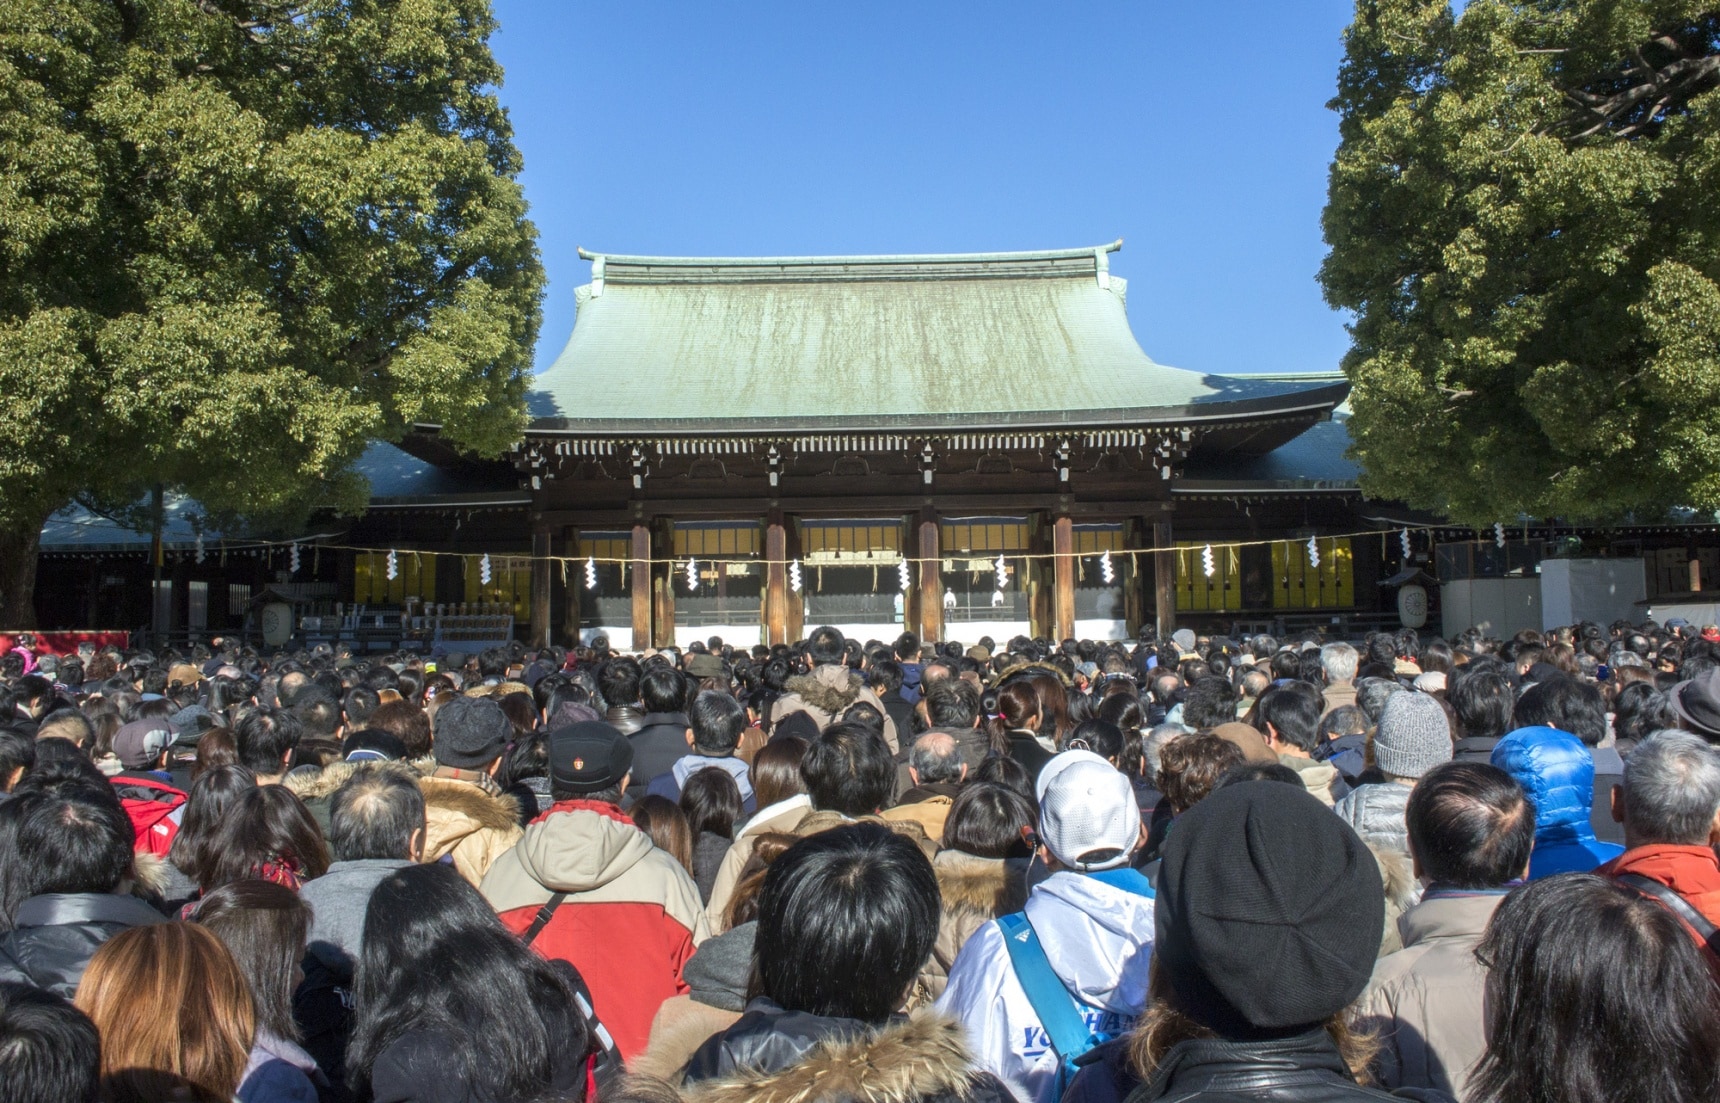 6 ศาลเจ้าและวัดยอดนิยมของคนญี่ปุ่นในวันปีใหม่